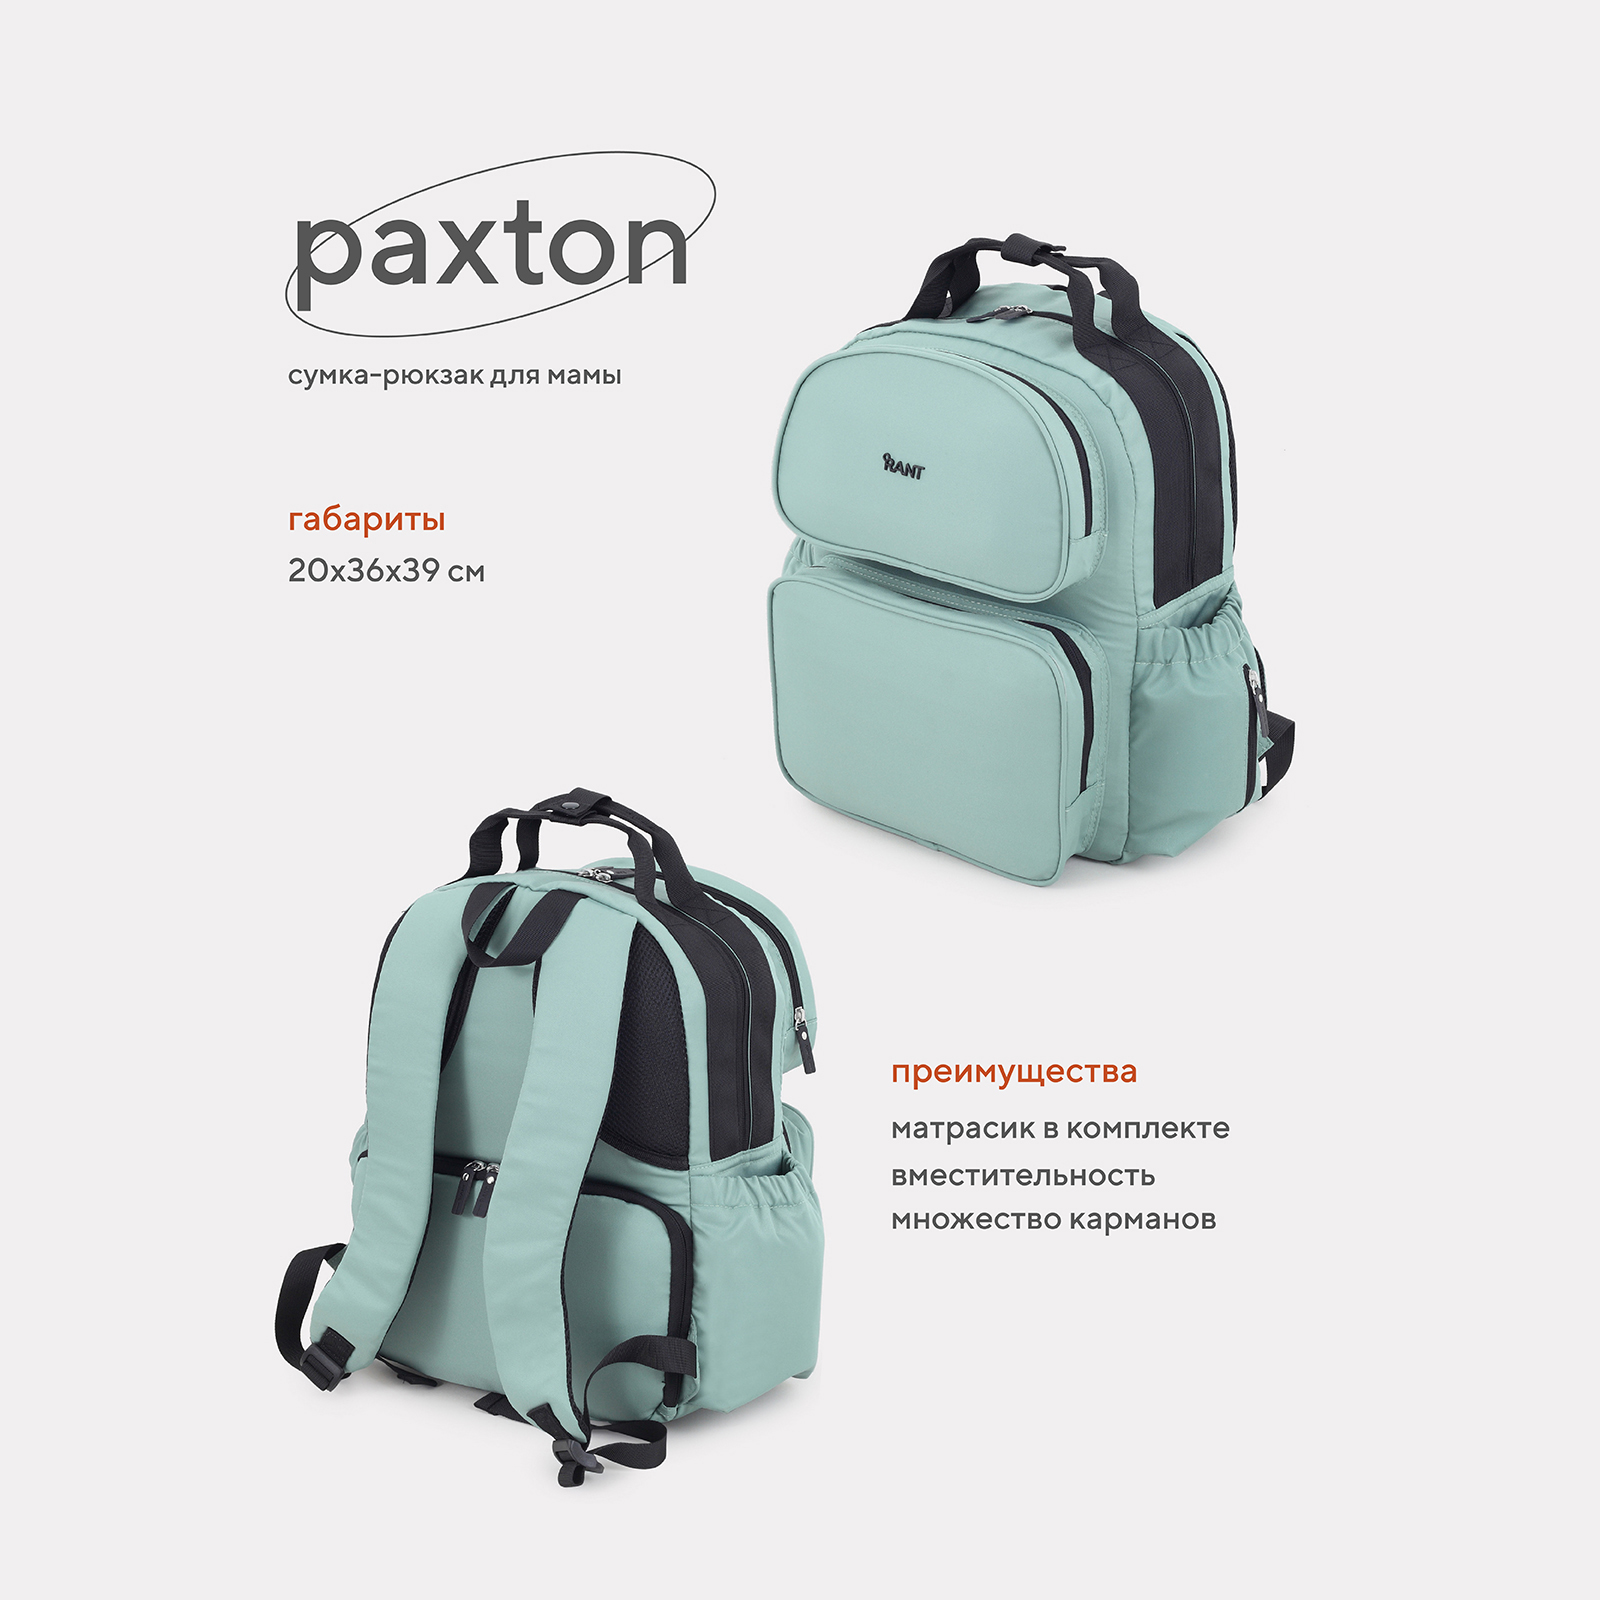 Сумка-рюкзак для мамы RANT Paxton RB008 Green сумка рюкзак для мамы rant paxton rb008 green